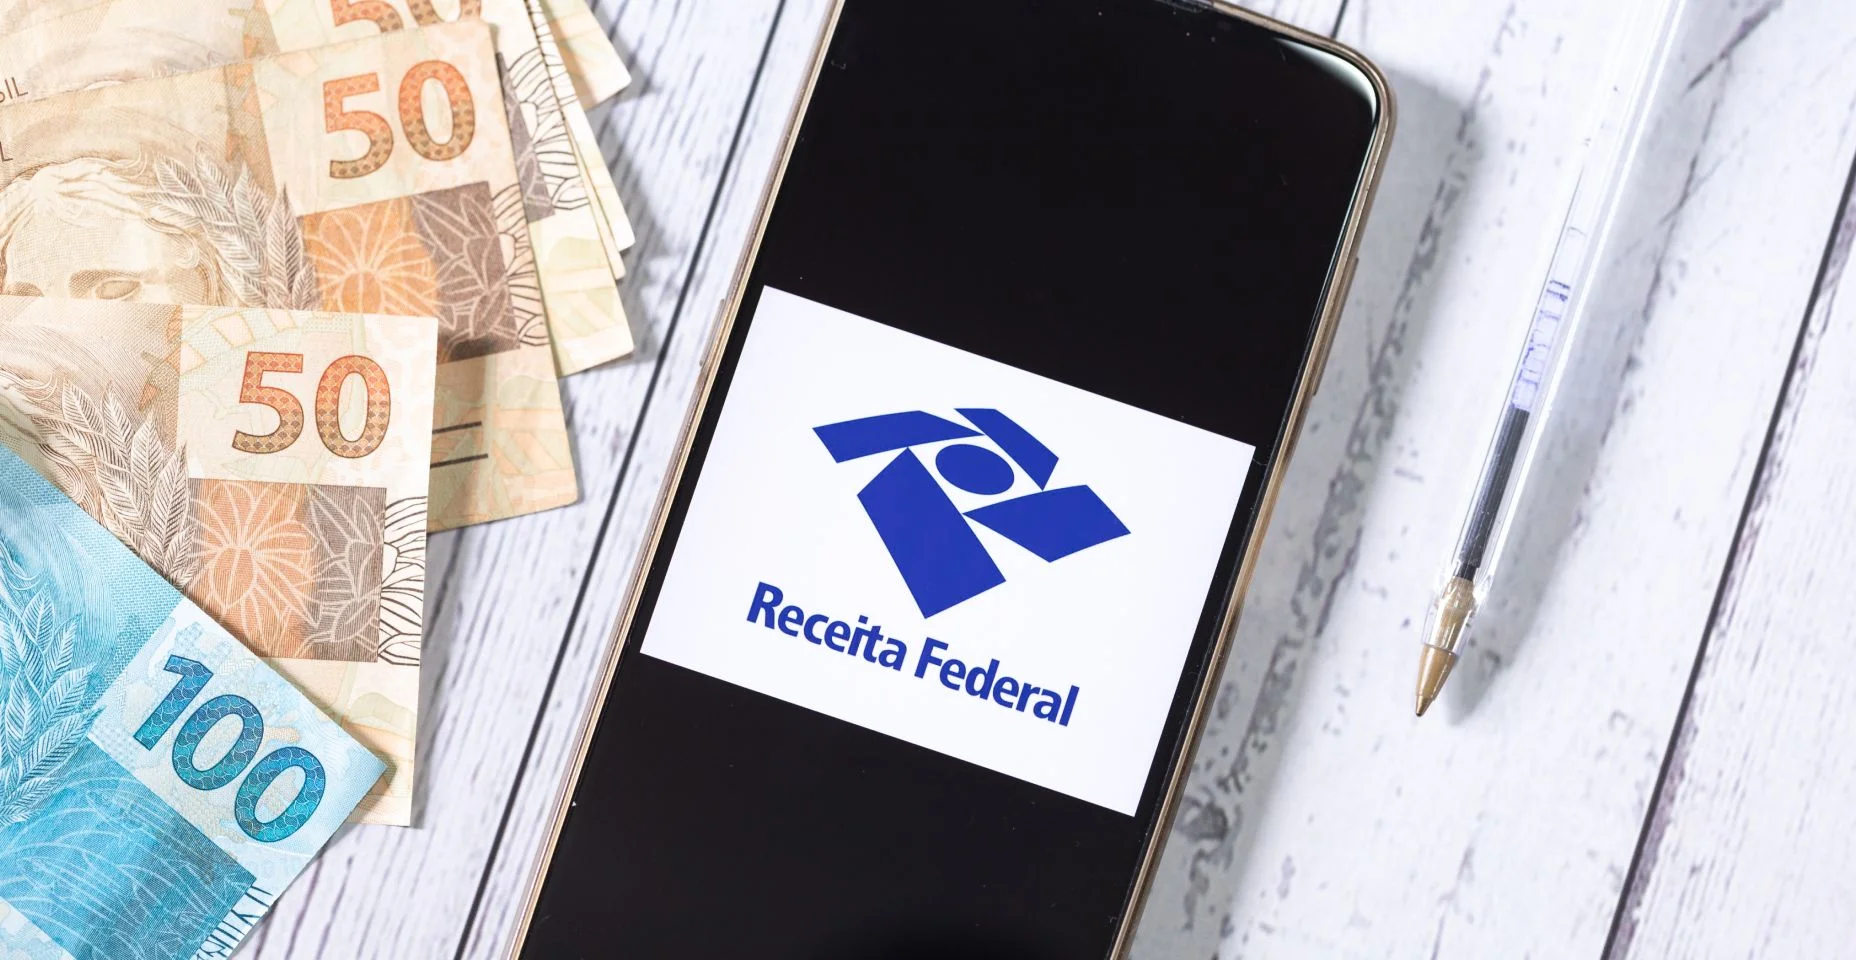 Um telefone celular com a logo da Receita Federal do Brasil e uma calculadora na composição da imagem. Imposto de renda, darf, declaração anual, restituição do imposto de renda.